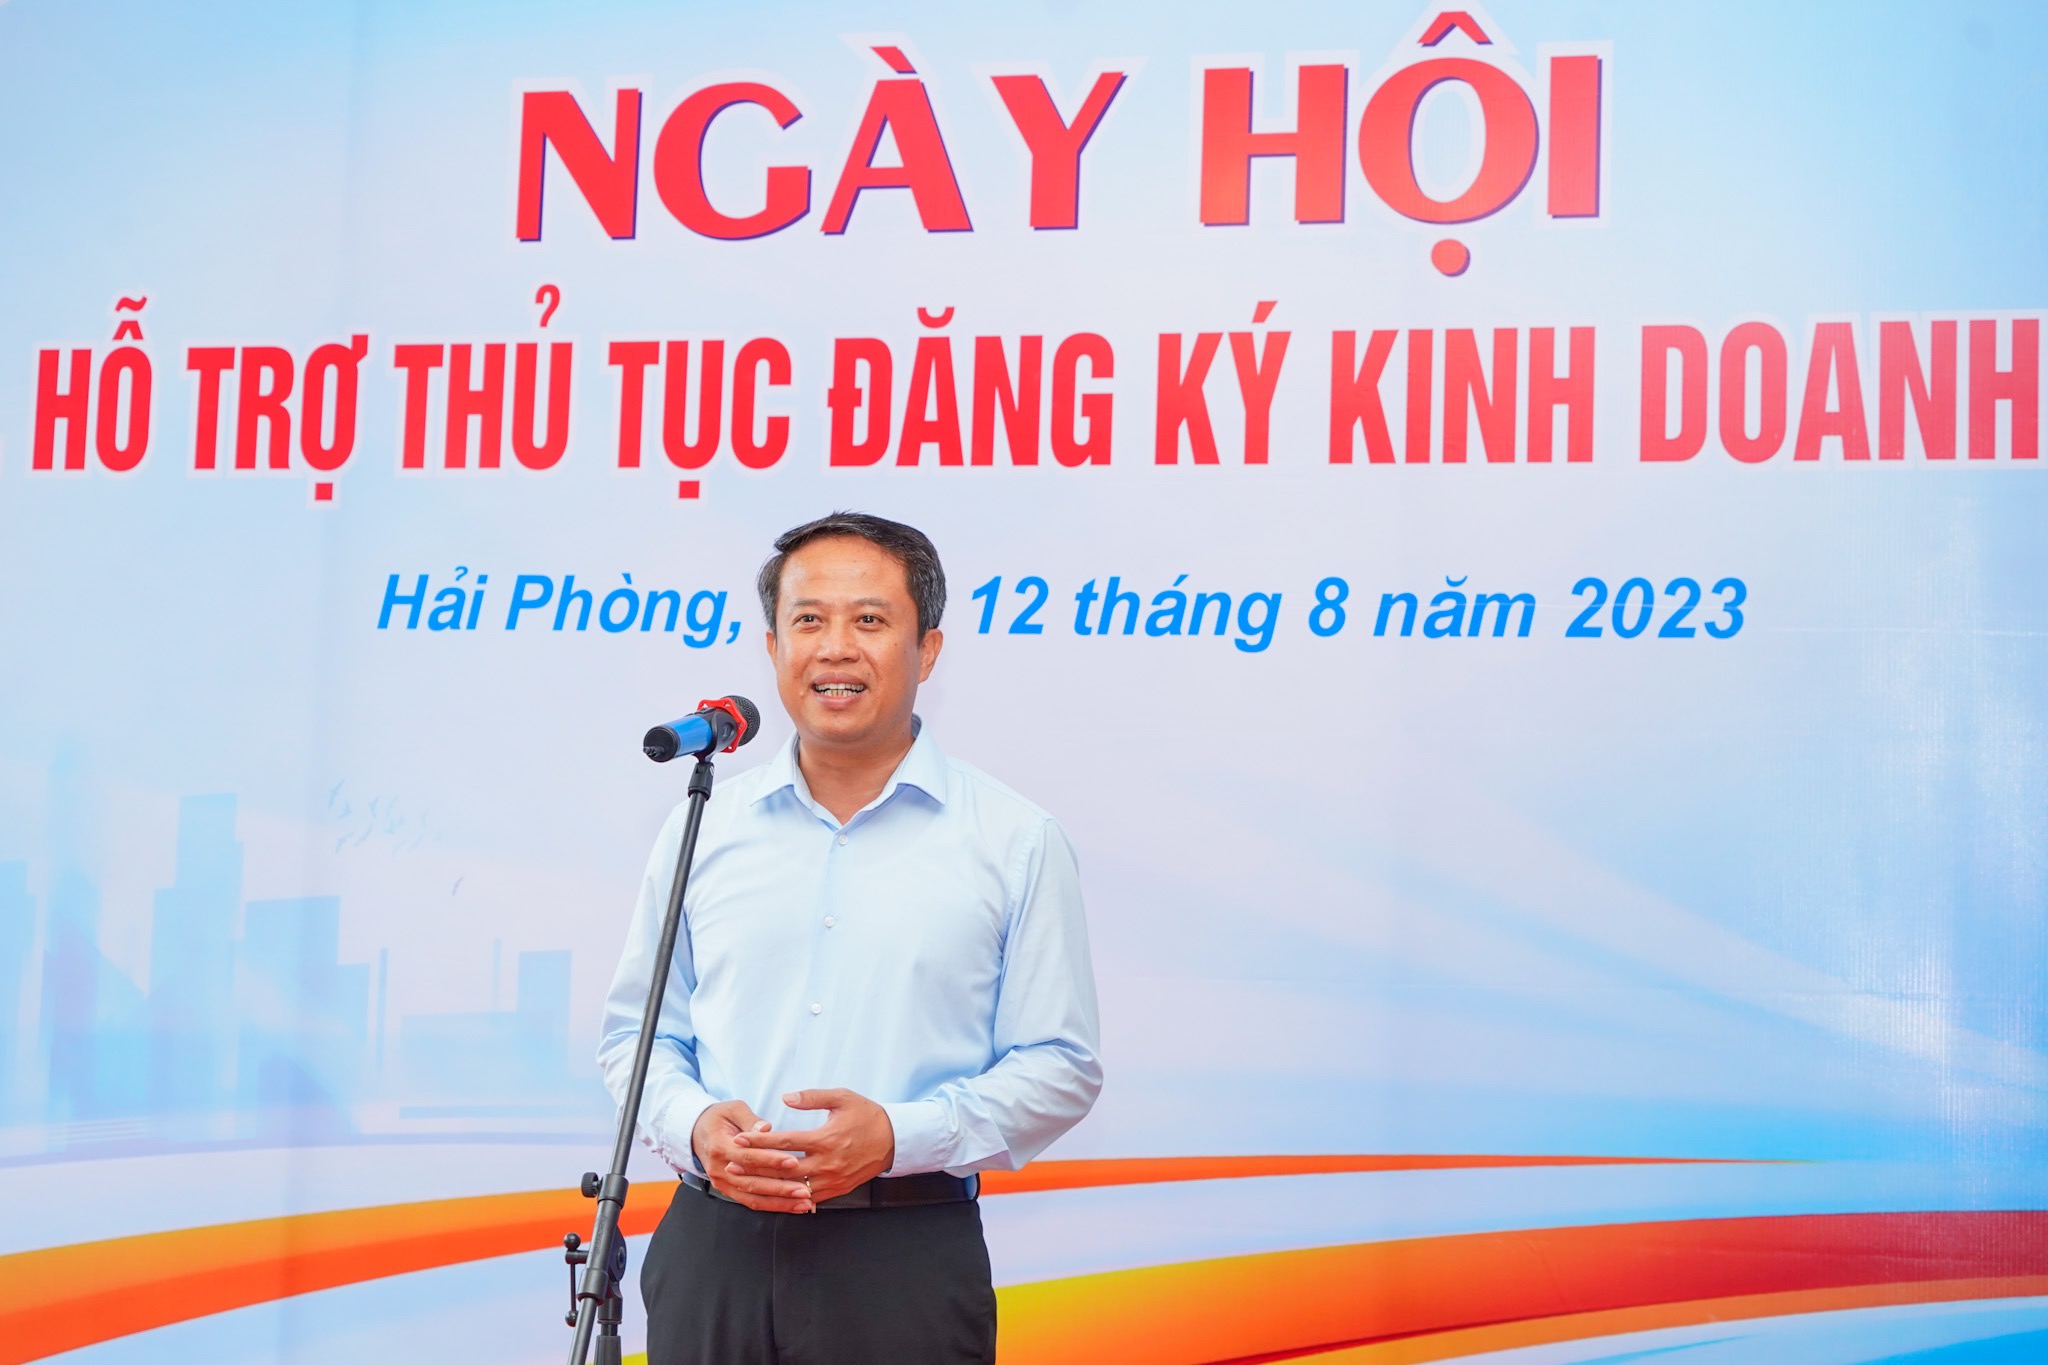 Ông Nguyễn Hoàng Long, Giám đốc Sở Kế hoạch và Đầu tư Hải Phòng phát biểu khai mạc